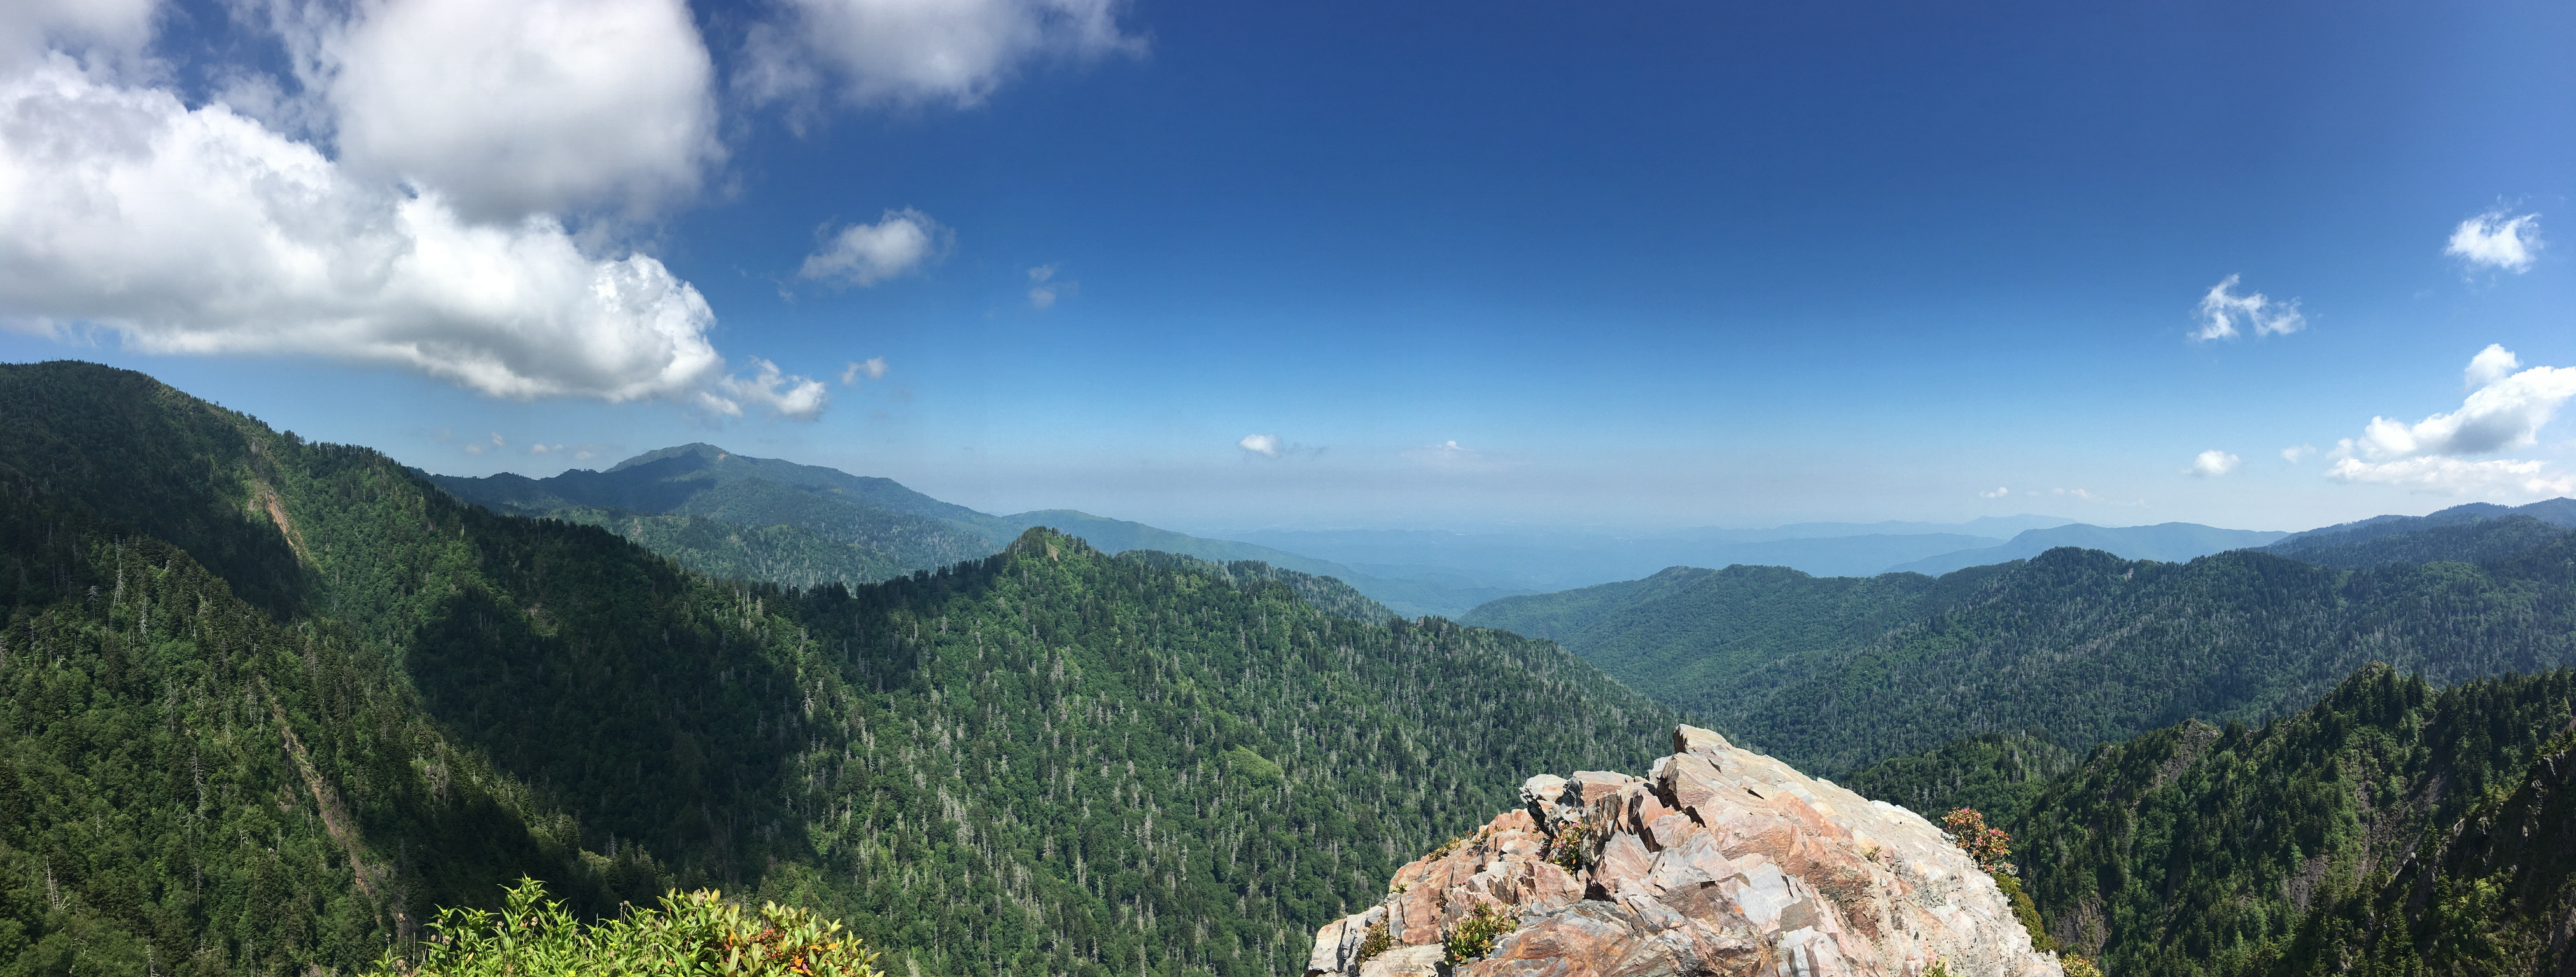 Smoky Mountains National Park - Mountaintop panorama